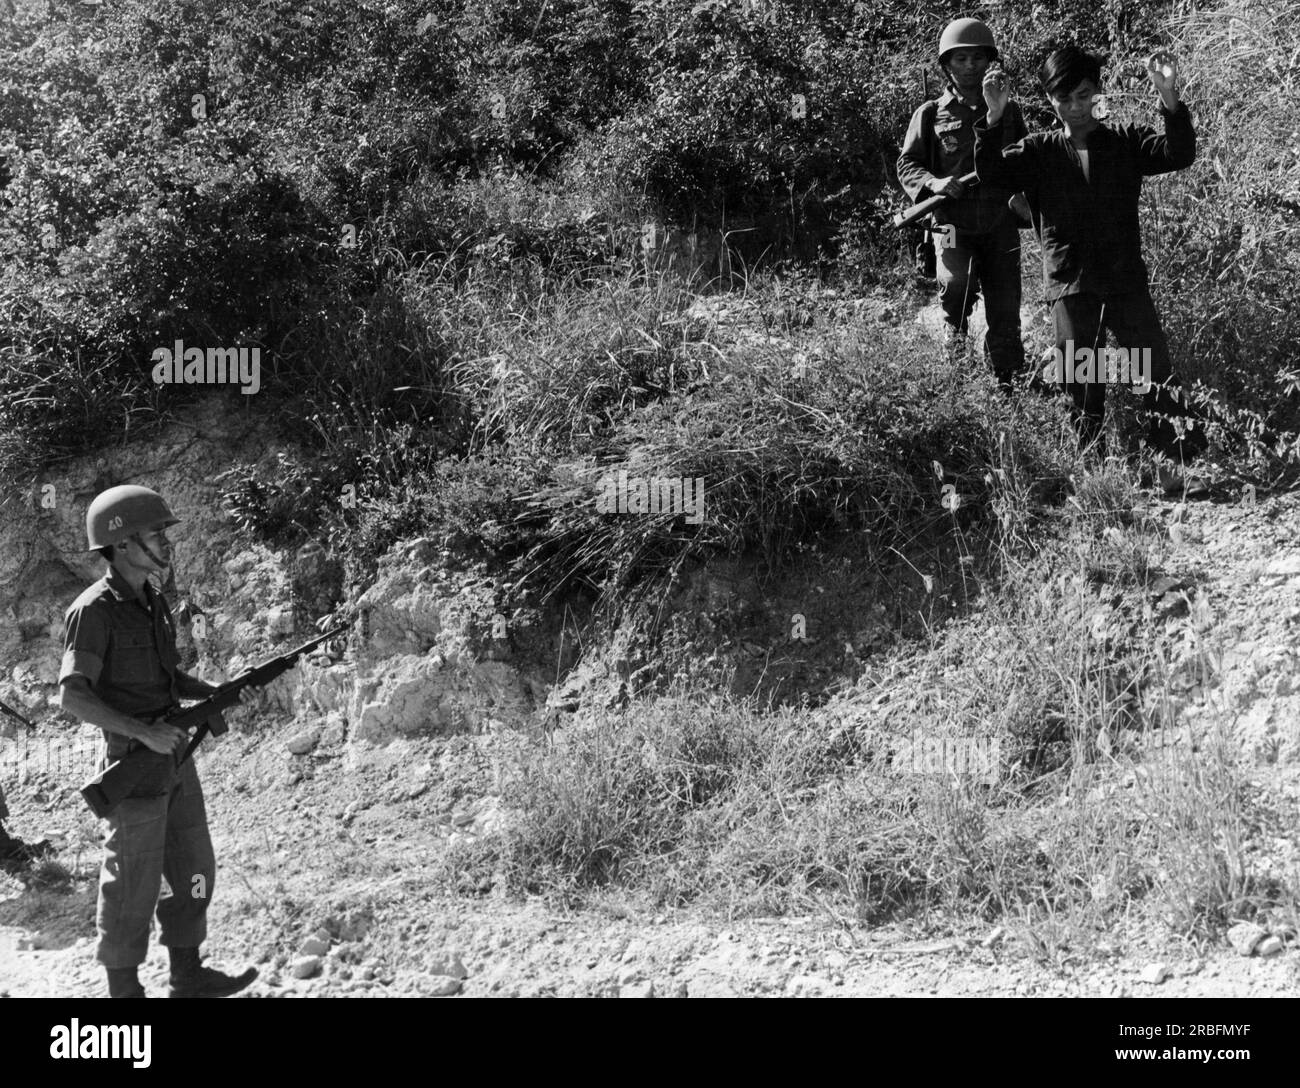 Nha Trang, Vietnam: 16. Februar 1966 Eine Vietcong-Guerilla ergibt sich den Soldaten der Republik Vietnam, nachdem sie Flugblätter zu psychologischen Kriegsführungen von den USA erhalten hatte Kommandos der Luftwaffe. Stockfoto